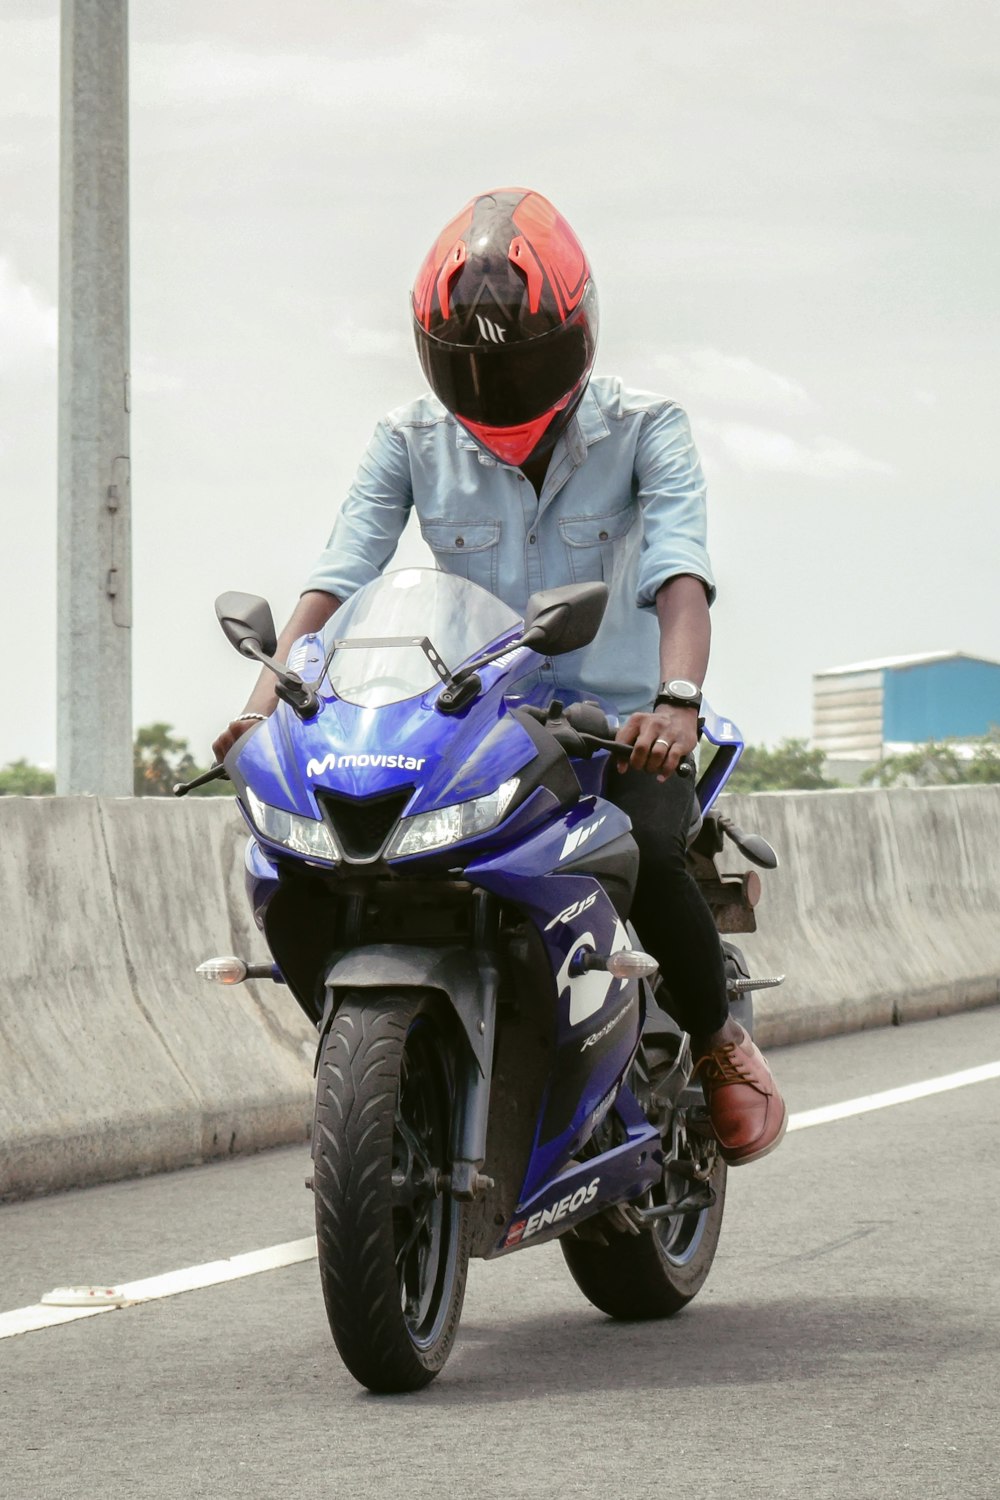 Homme au casque rouge conduisant une moto bleue et noire pendant la journée